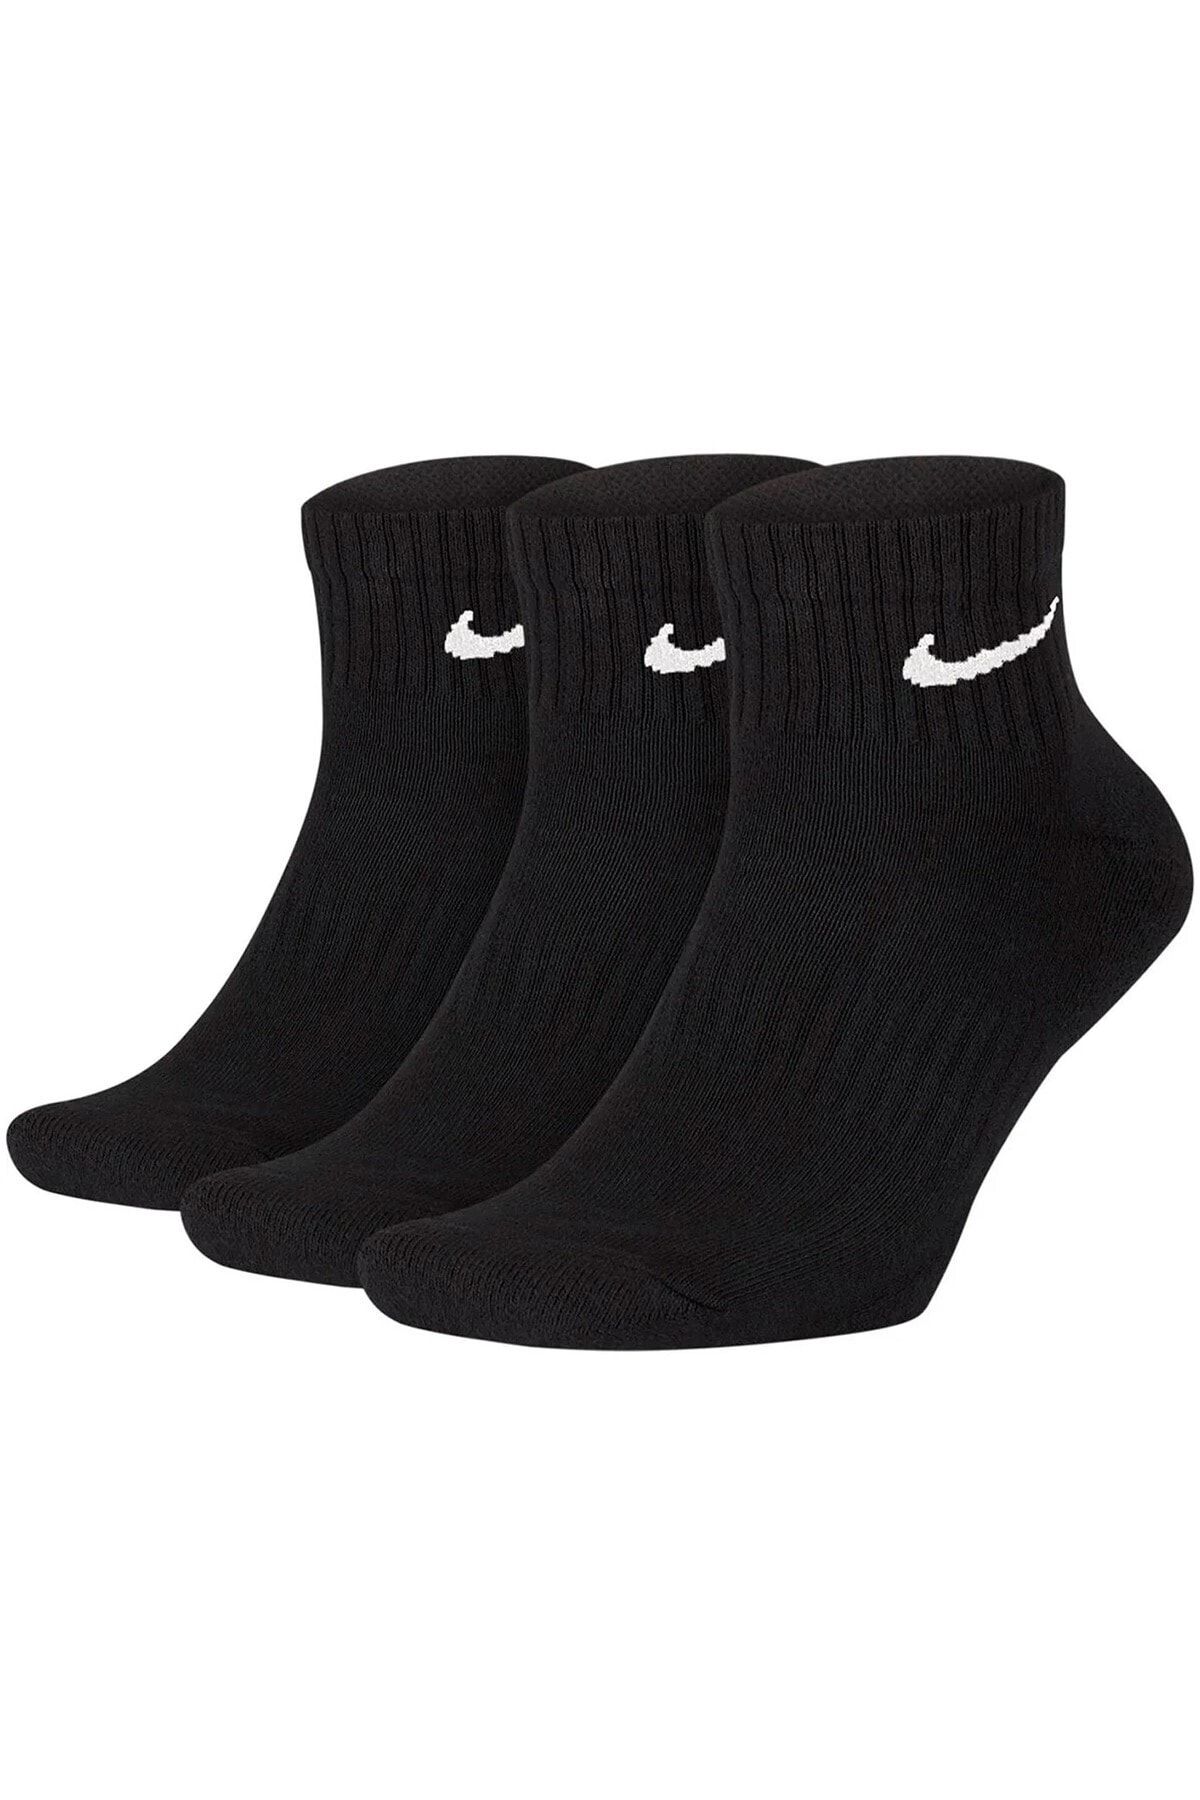 Nike Erkek Siyah Everyday Cushion Ankle Çorap Sx7667-010